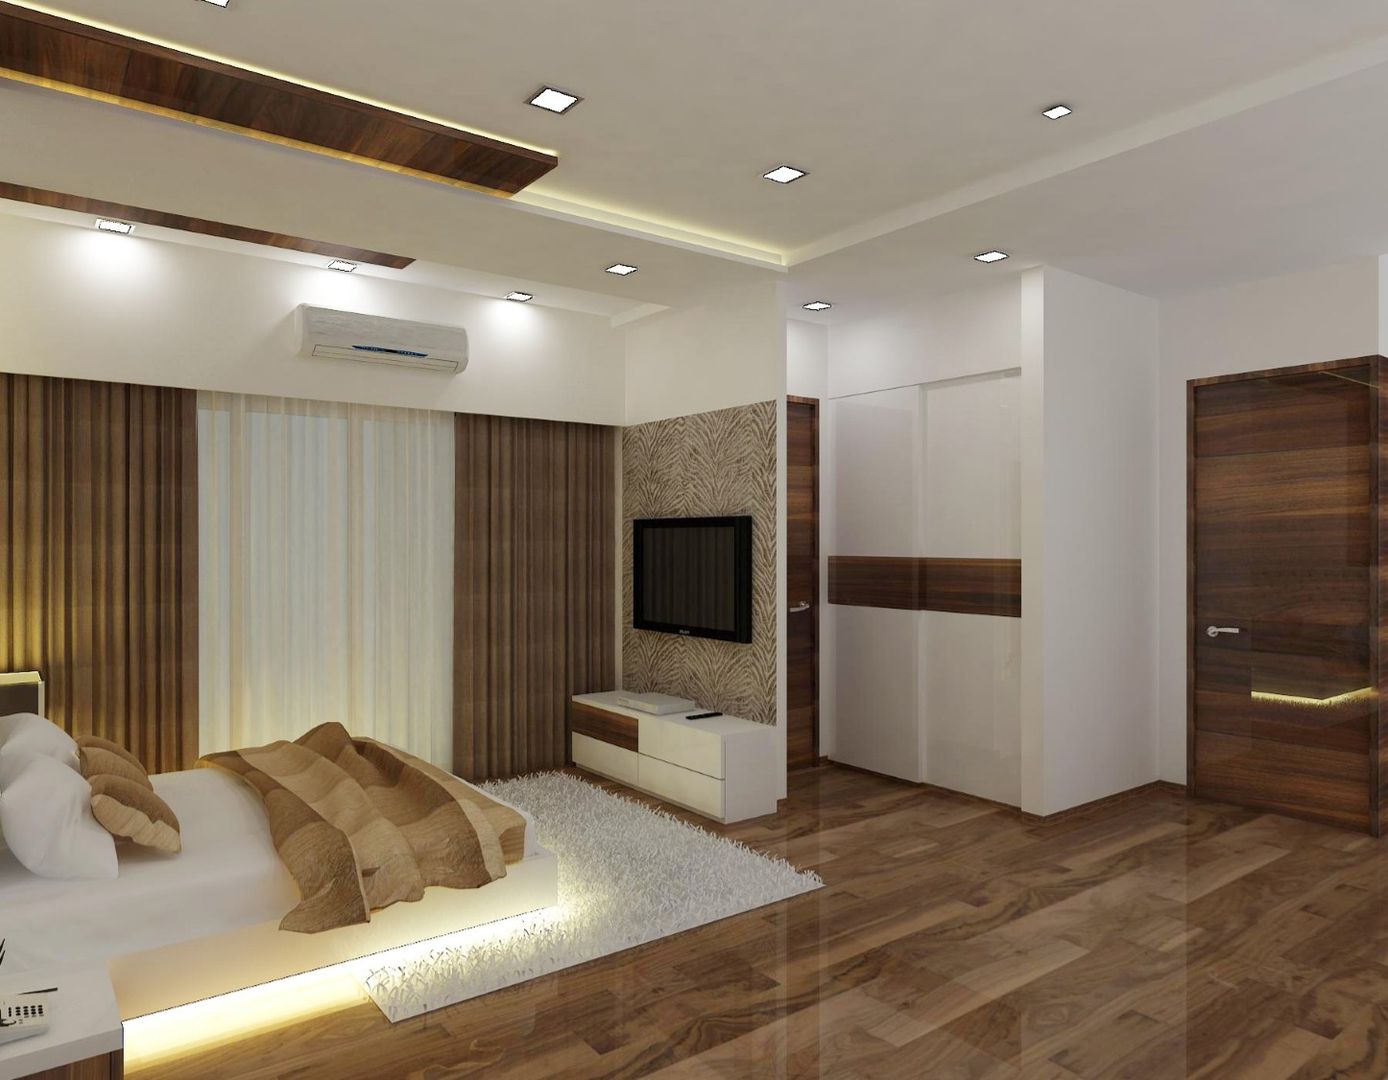 2 BHK at Mumbai, A Design Studio A Design Studio Dormitorios de estilo moderno Madera Acabado en madera